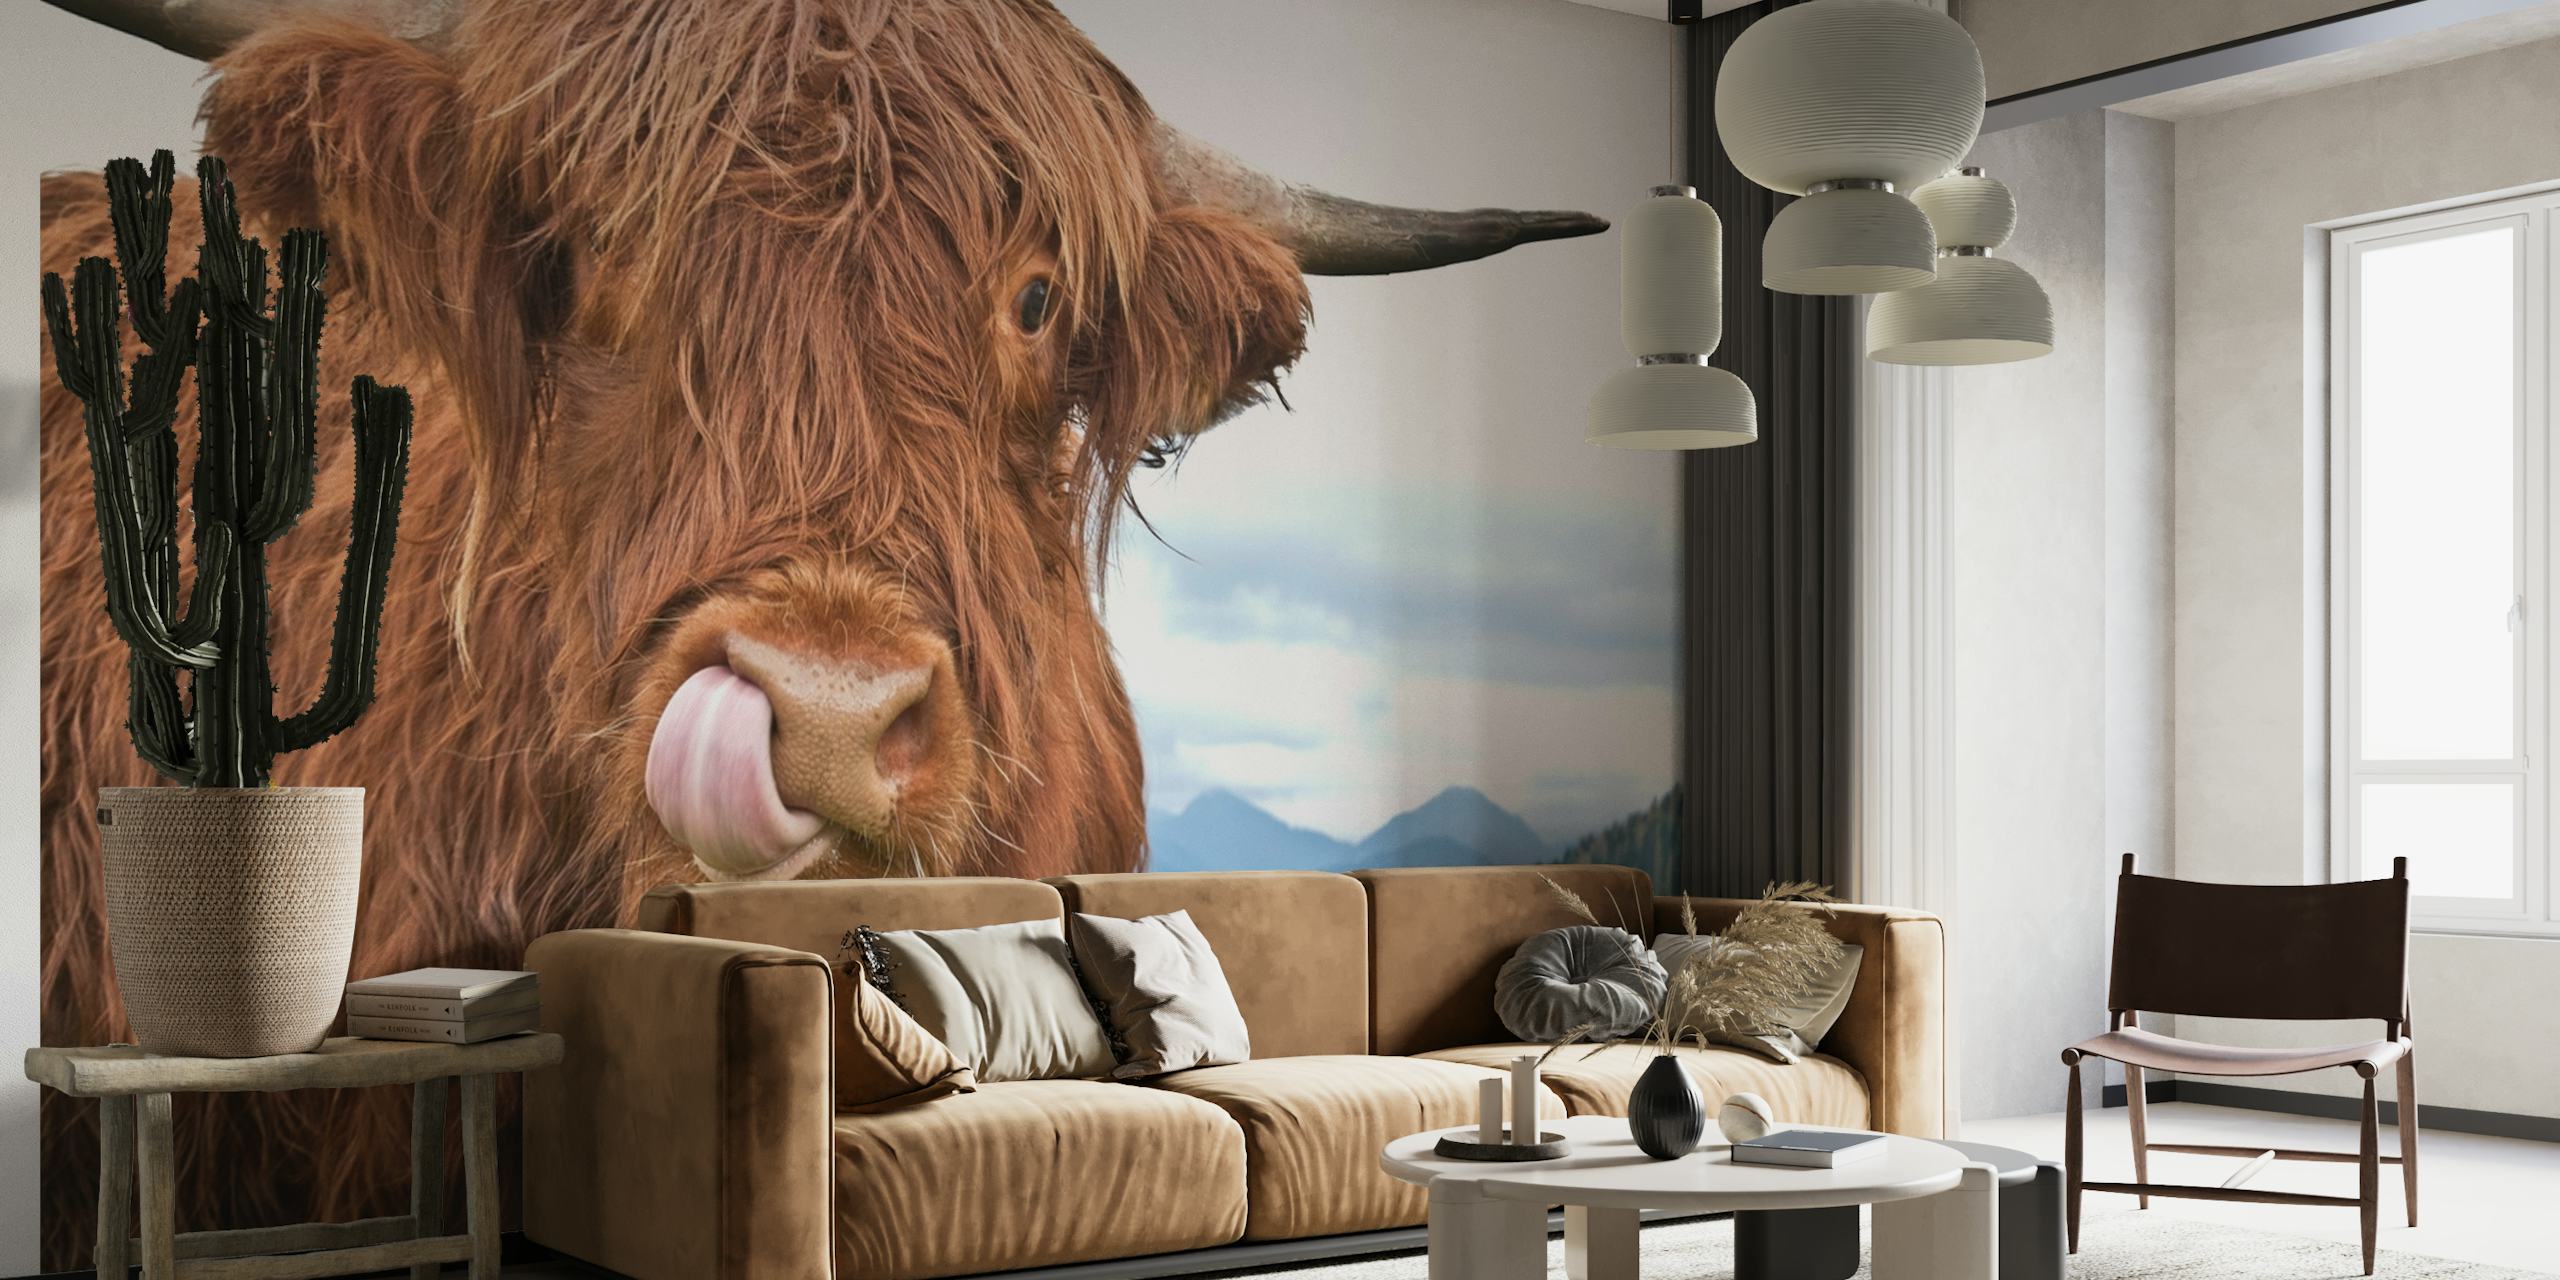 Vache des Highlands aux cheveux hirsutes qui sort la langue sur fond de paysage sur une fresque murale